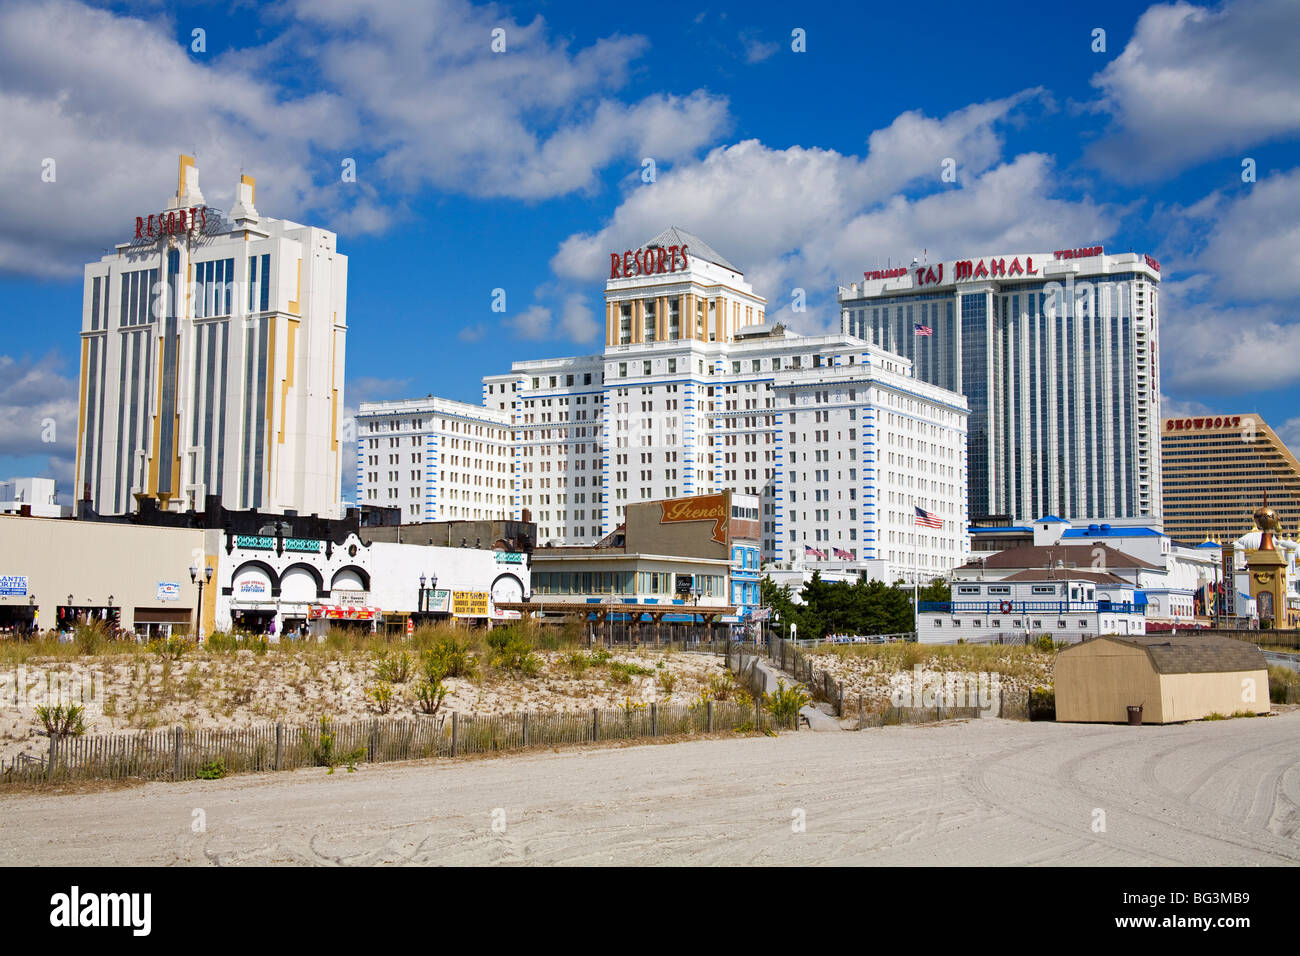 best casino in atlantic city boardwalk